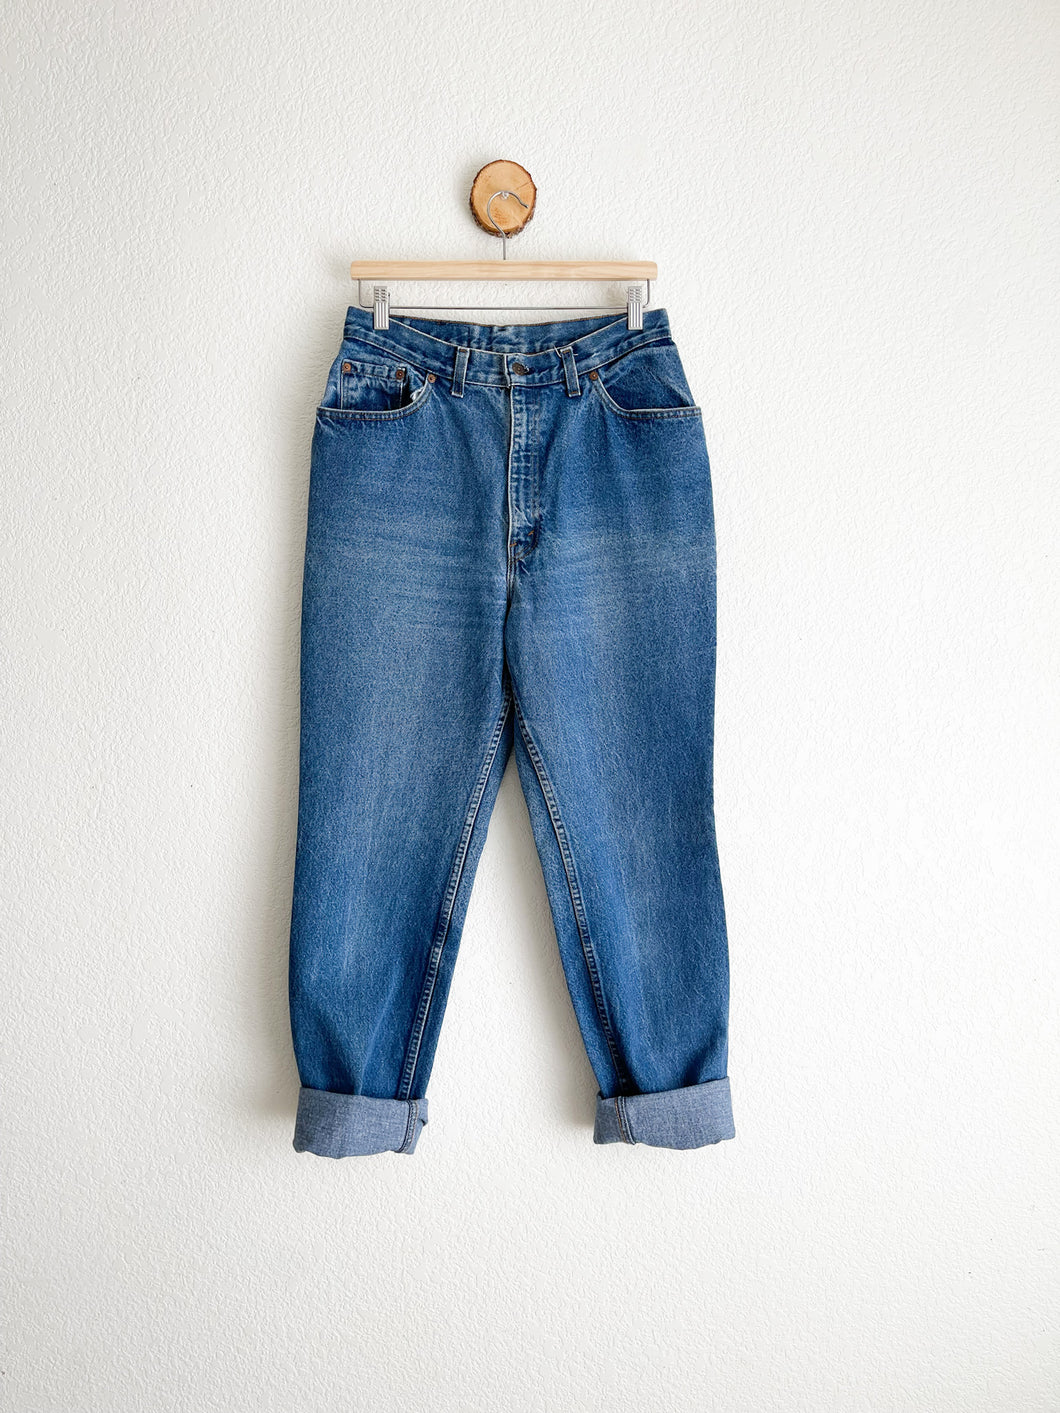 Vintage Levi's 18505 Jeans - 30